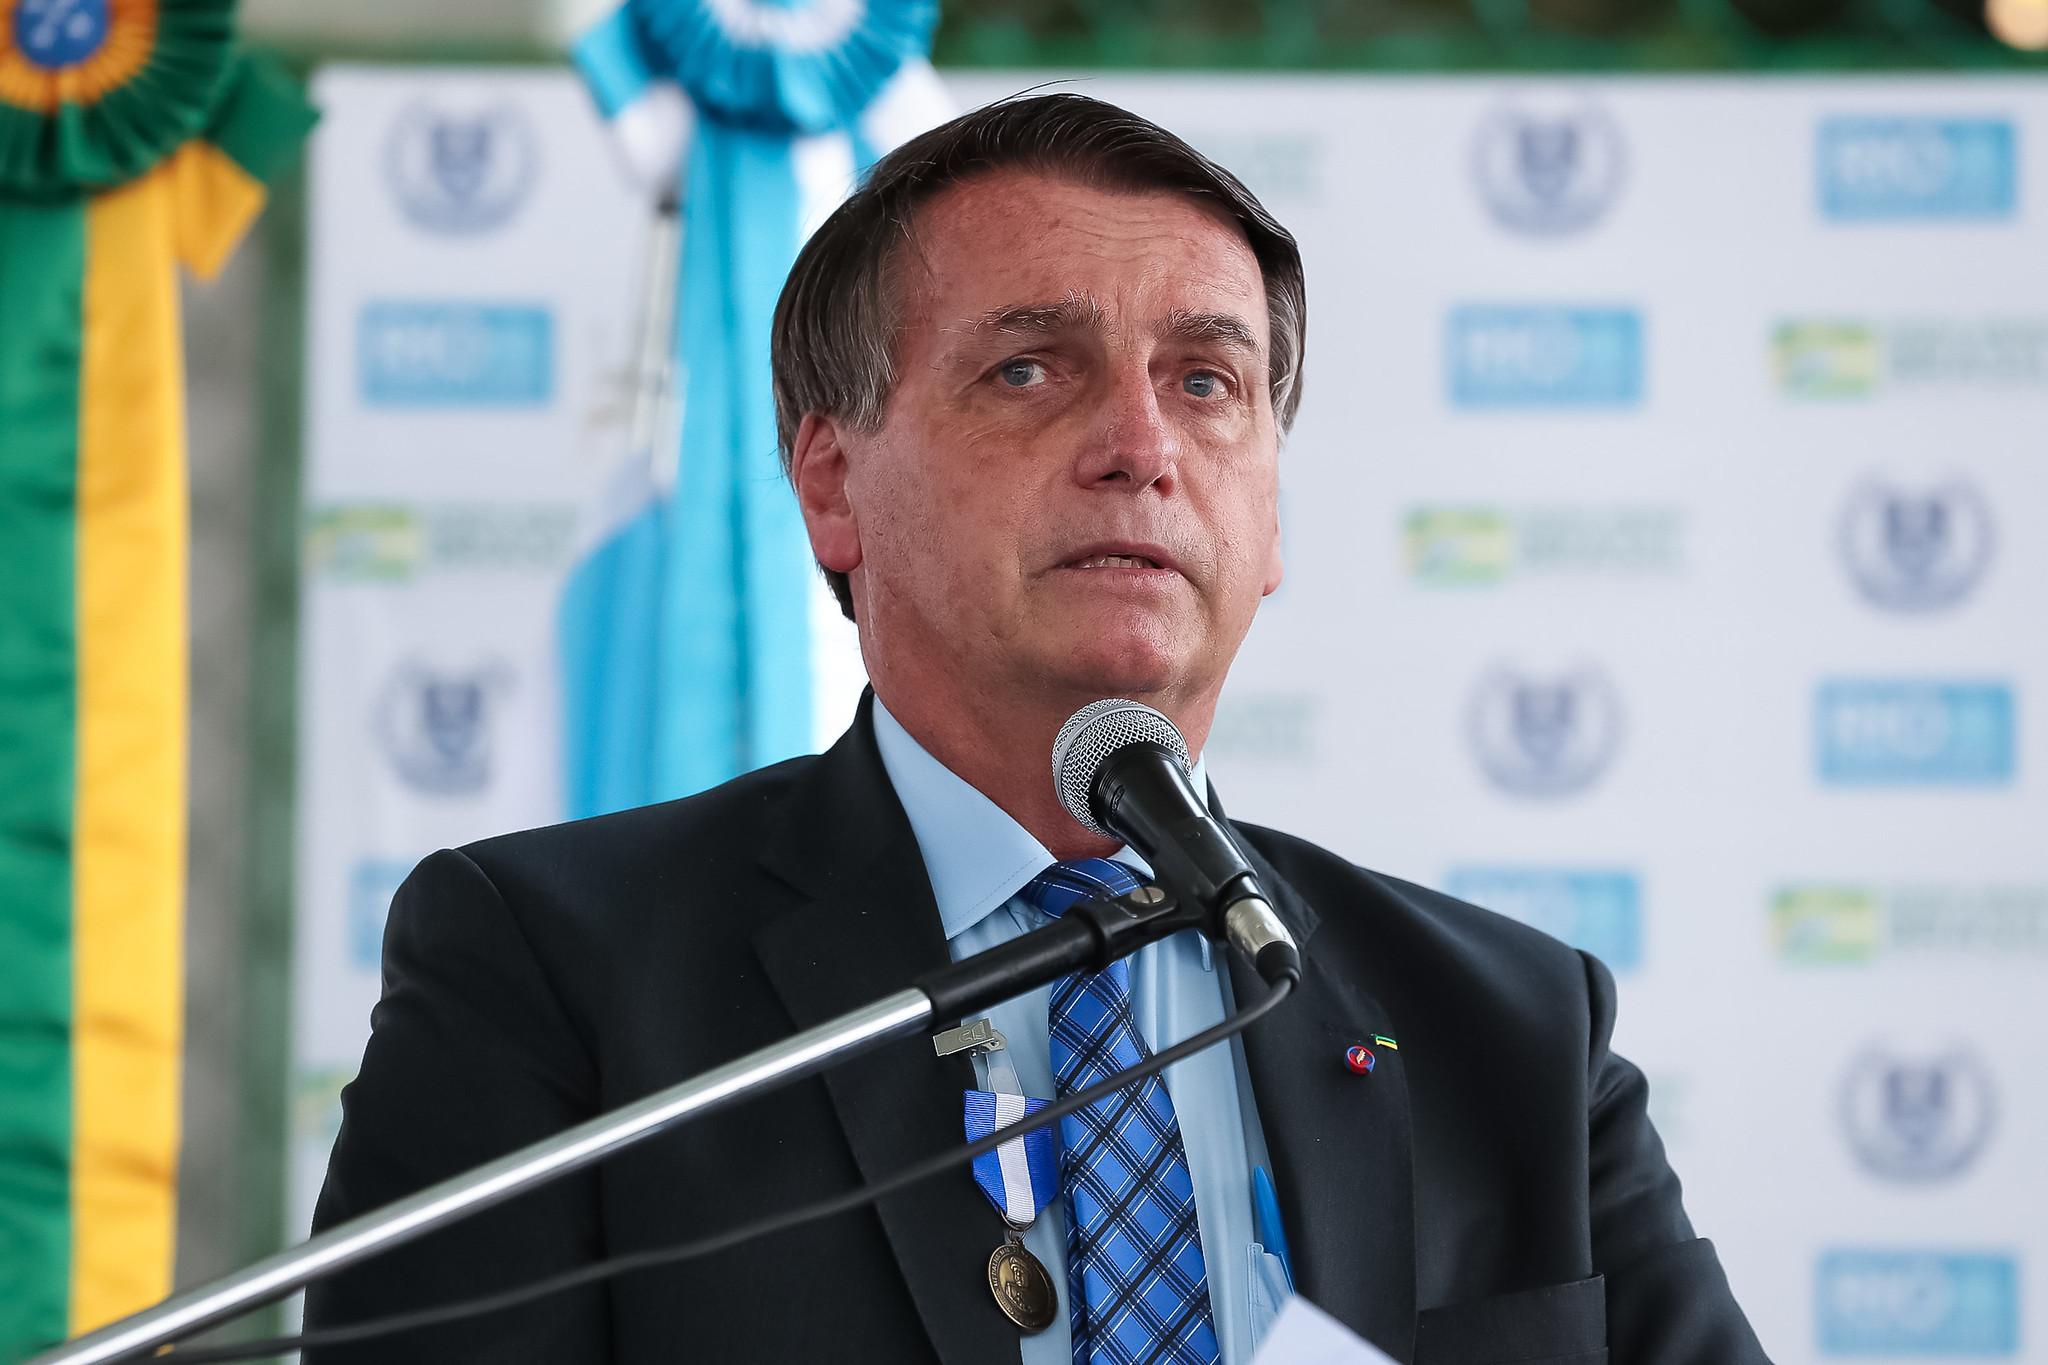 Bolsonaro encaminha novo projeto de lei para combater “censura” nas redes